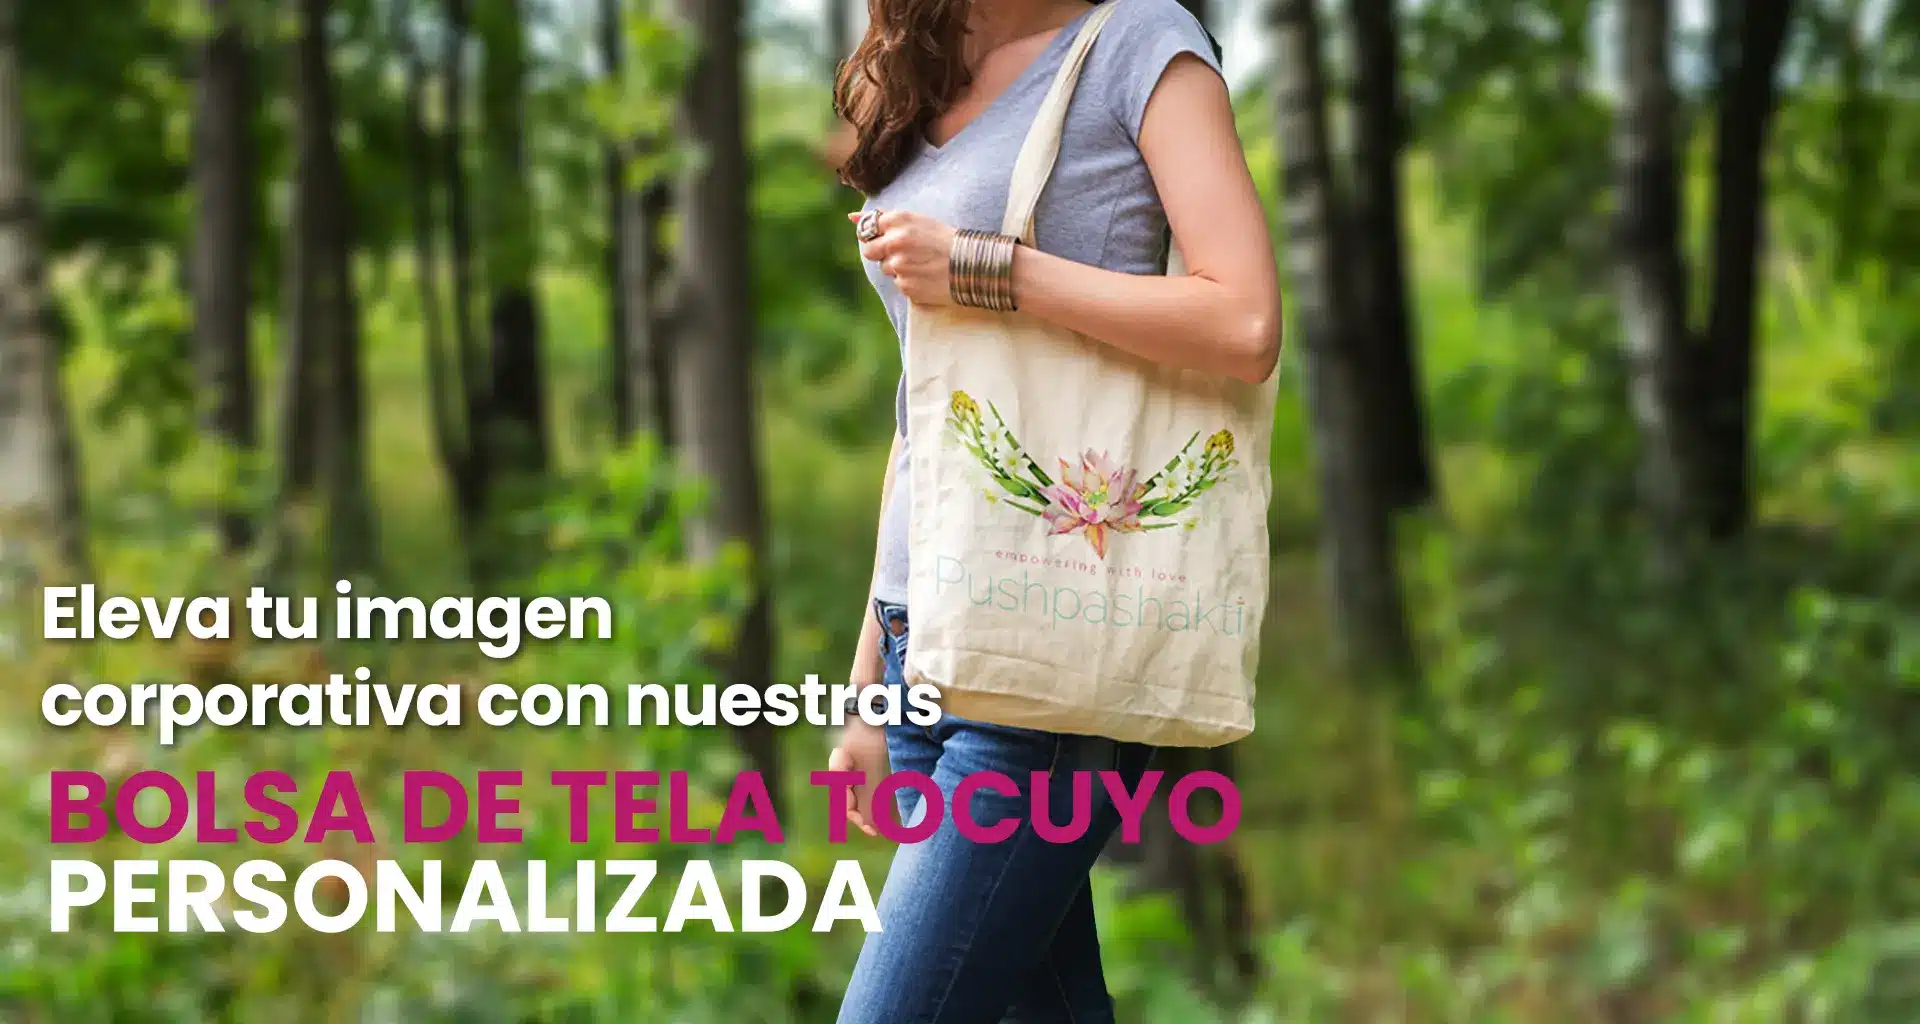 Bolsas de Tela Tocuyo en Gamarra personalizadas, con medidas, colores, al por mayor